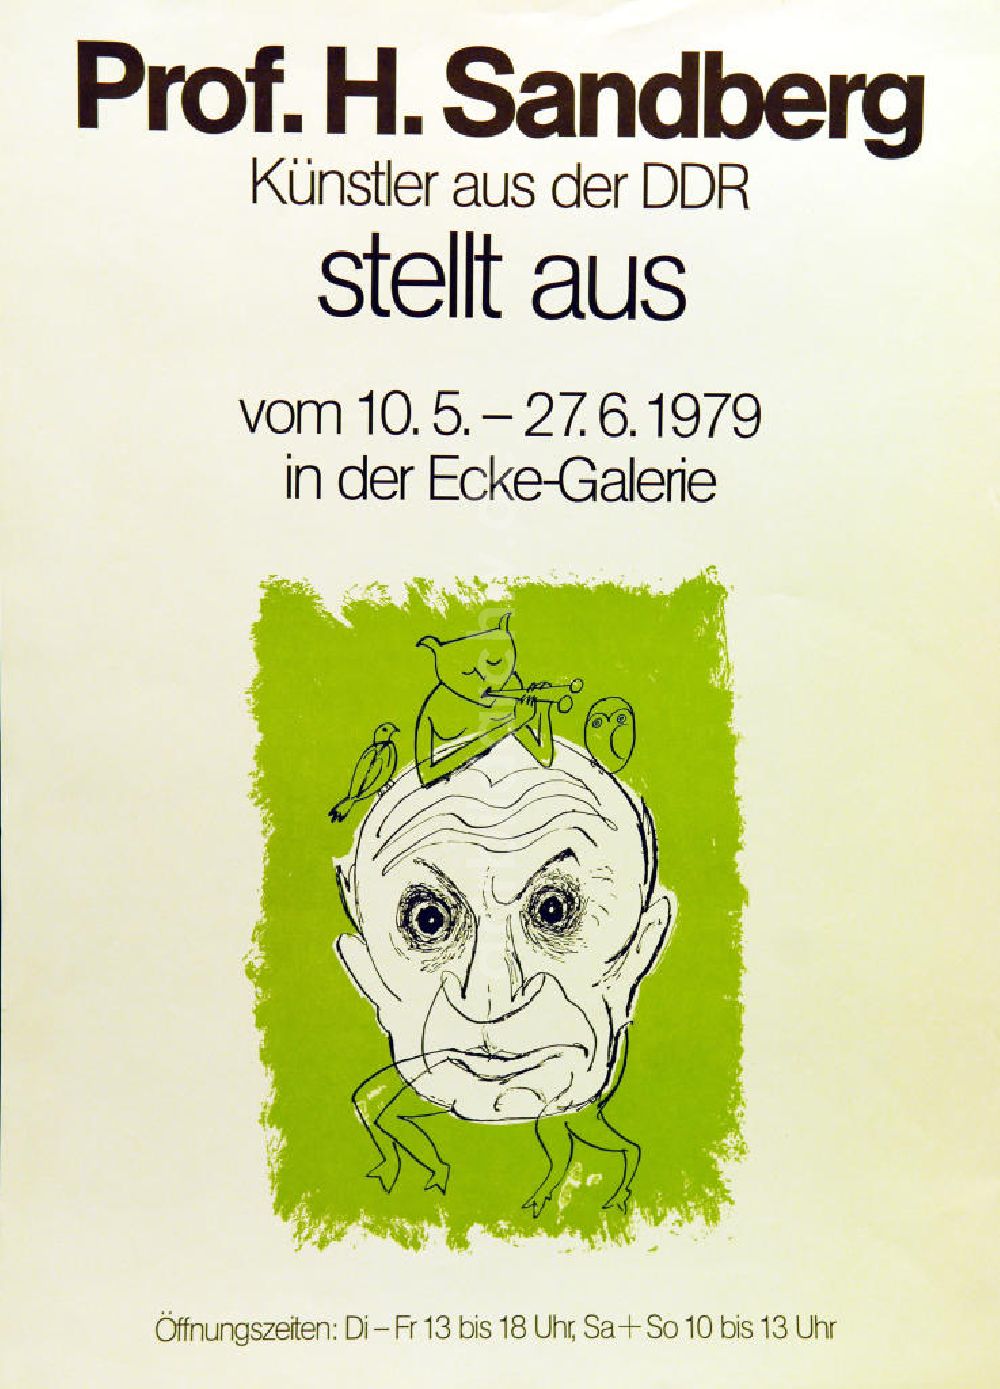 DDR-Fotoarchiv: Berlin - Plakat von der Ausstellung Prof. H. Sandberg, Künstler aus der DDR stellt aus aus dem Jahr 1979